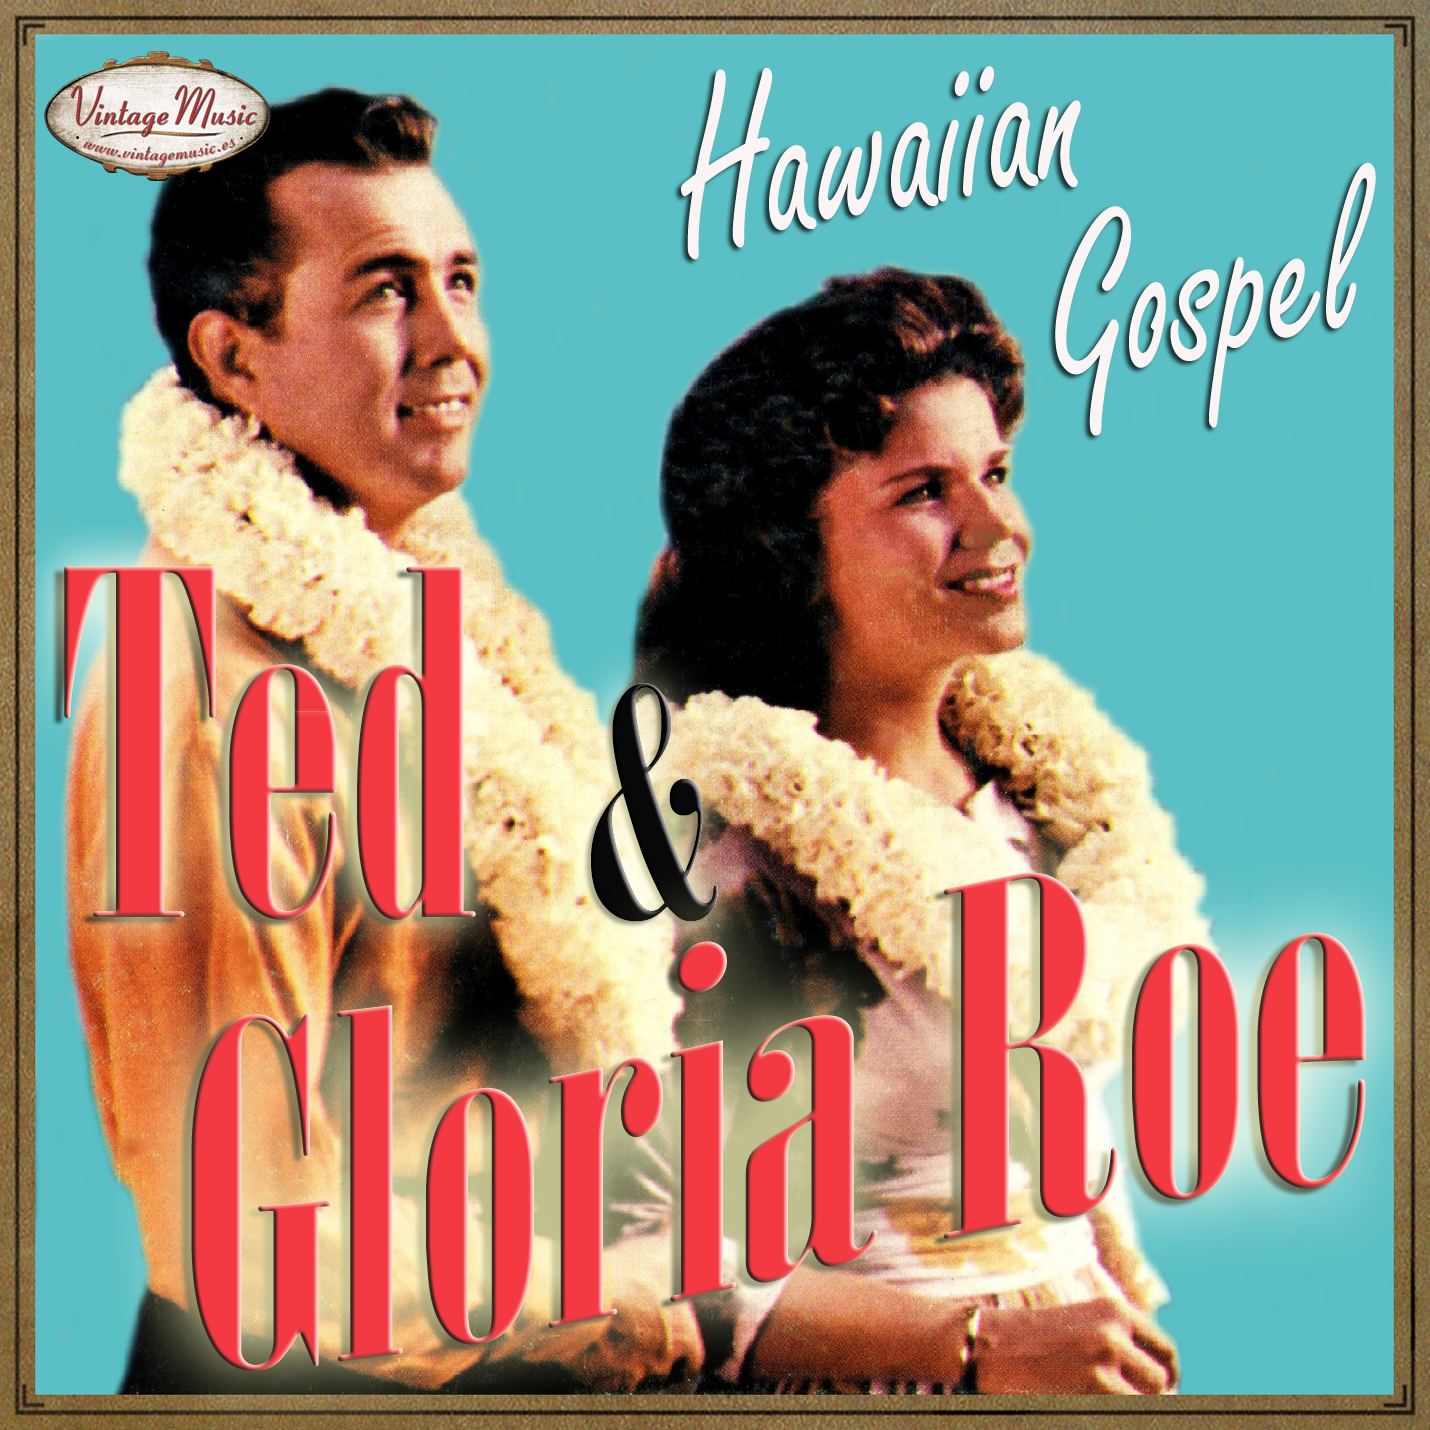 Ted & Gloria Roe (Colección Vintage Music)